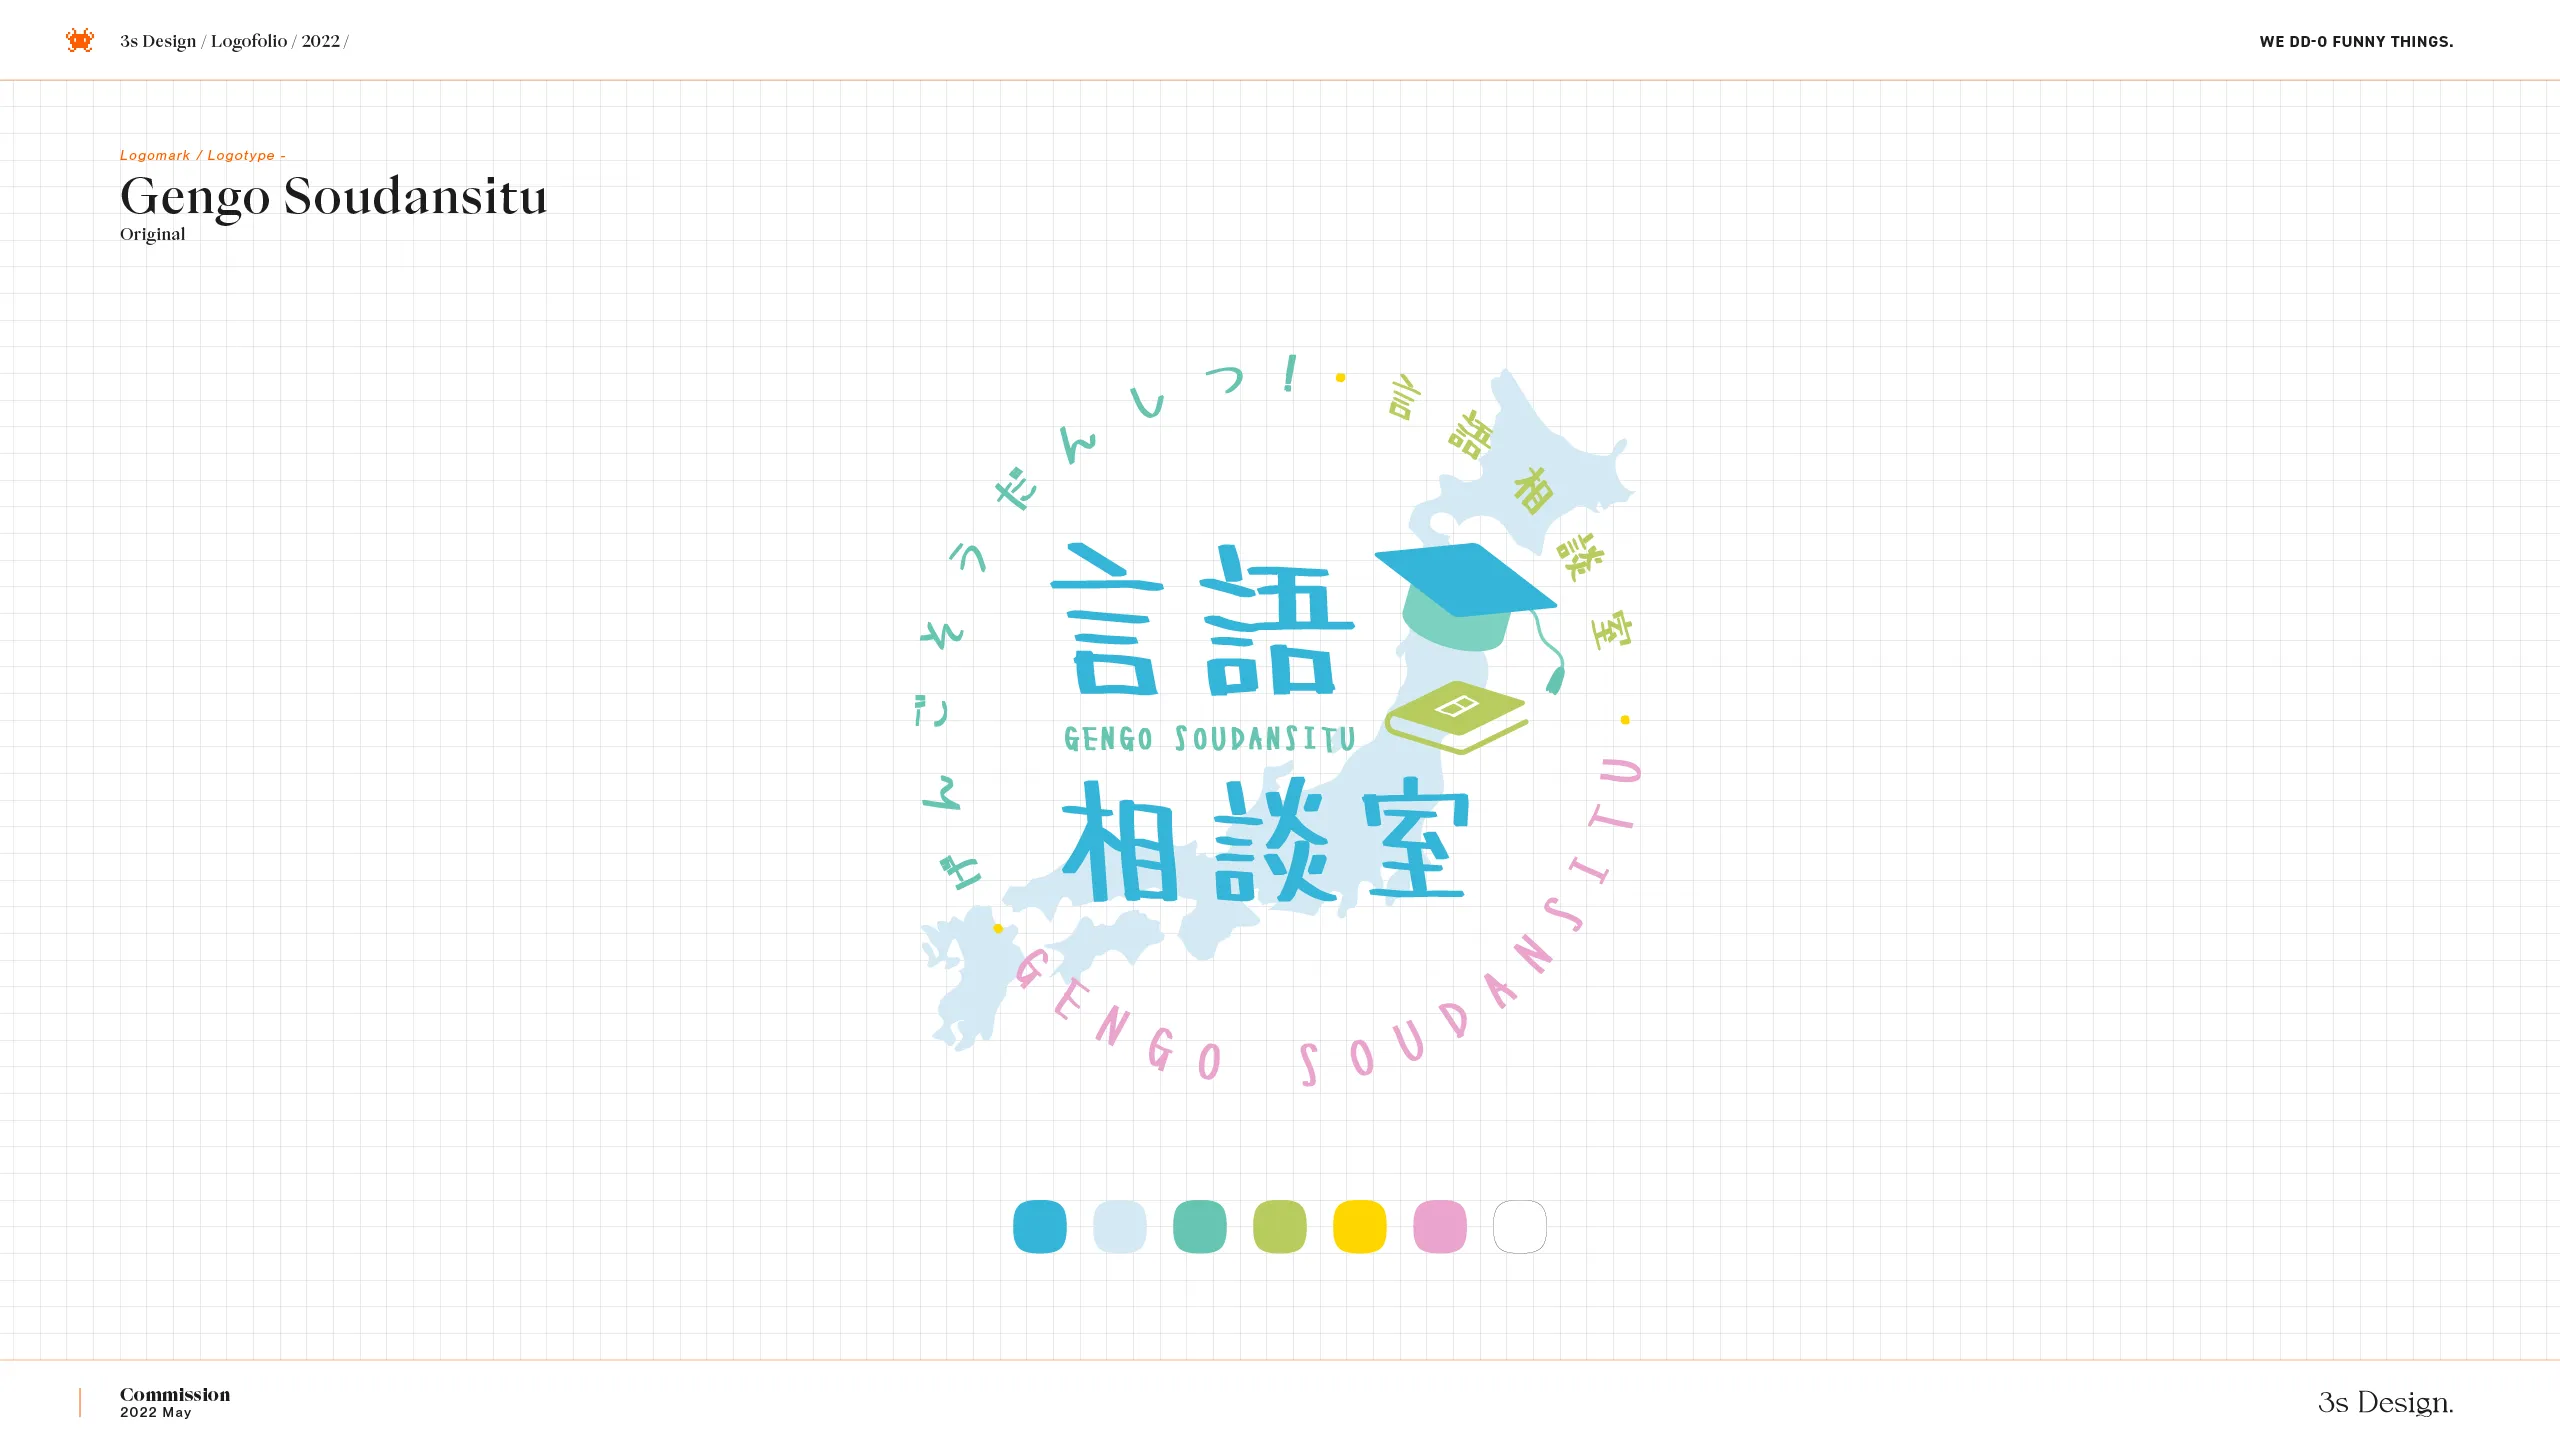 3s-Design-Logofolio-2022-v1.3_Gengo-Soudansitu_2560x